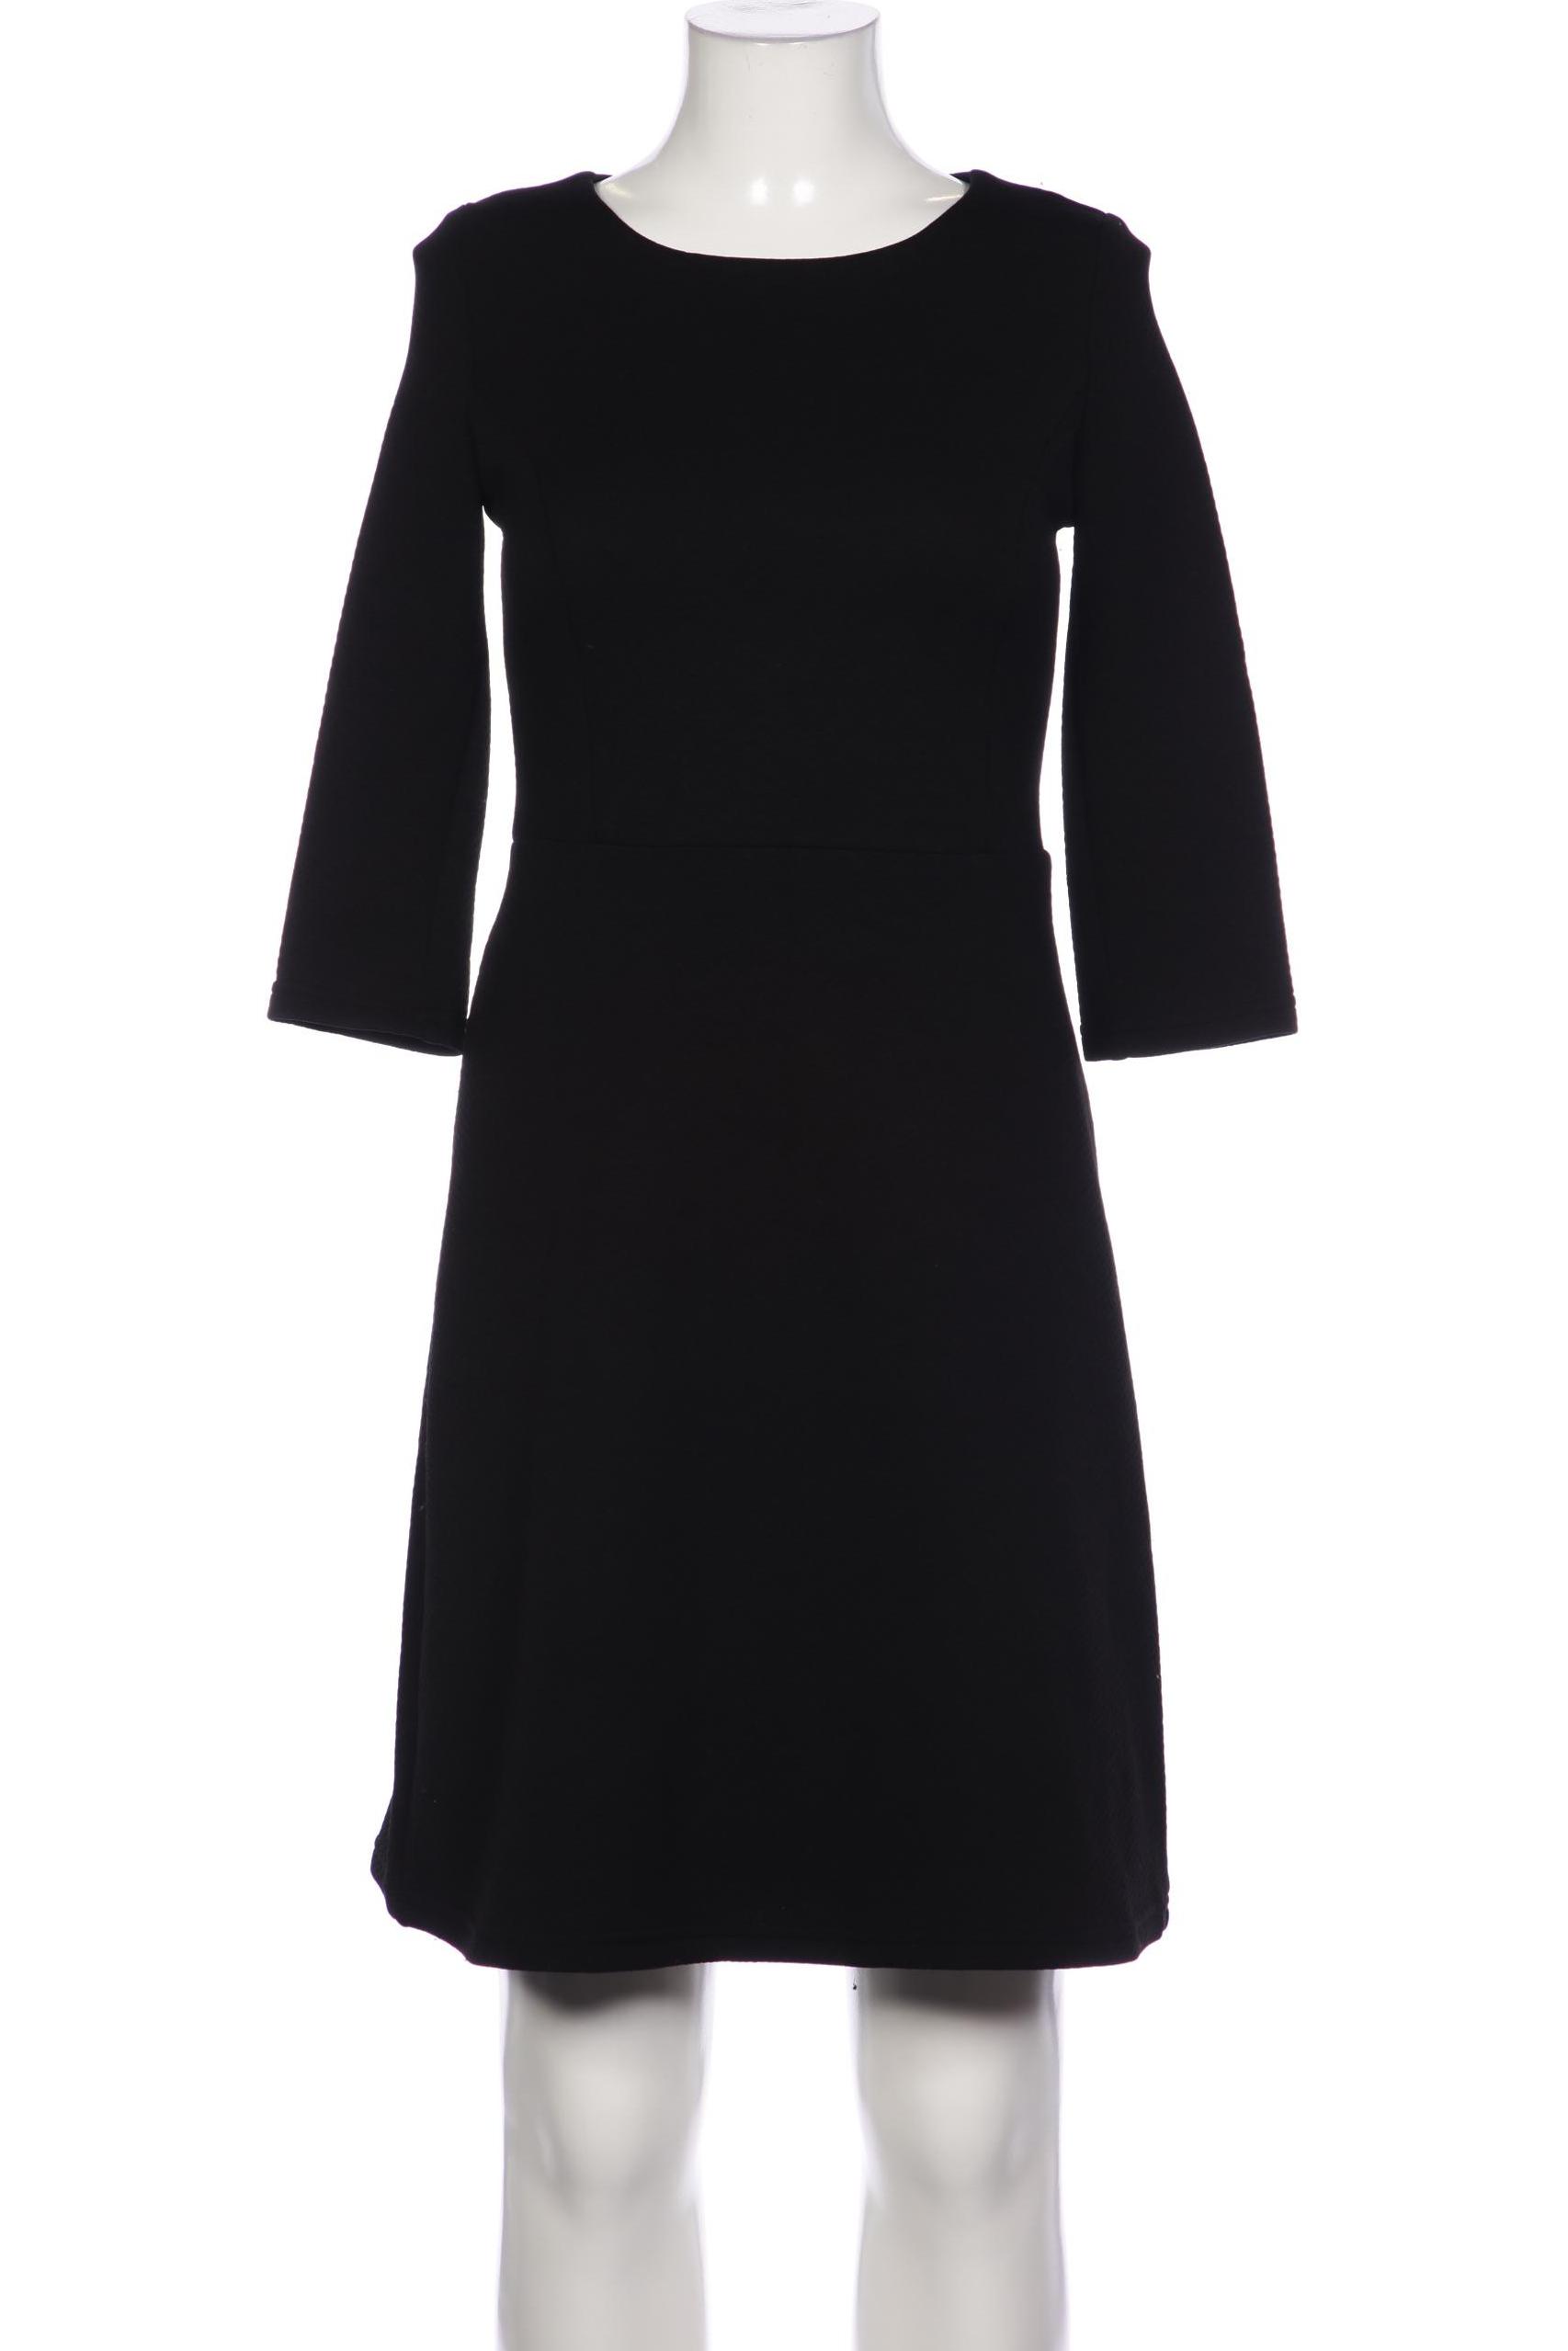 Montego Damen Kleid, schwarz, Gr. 34 von montego